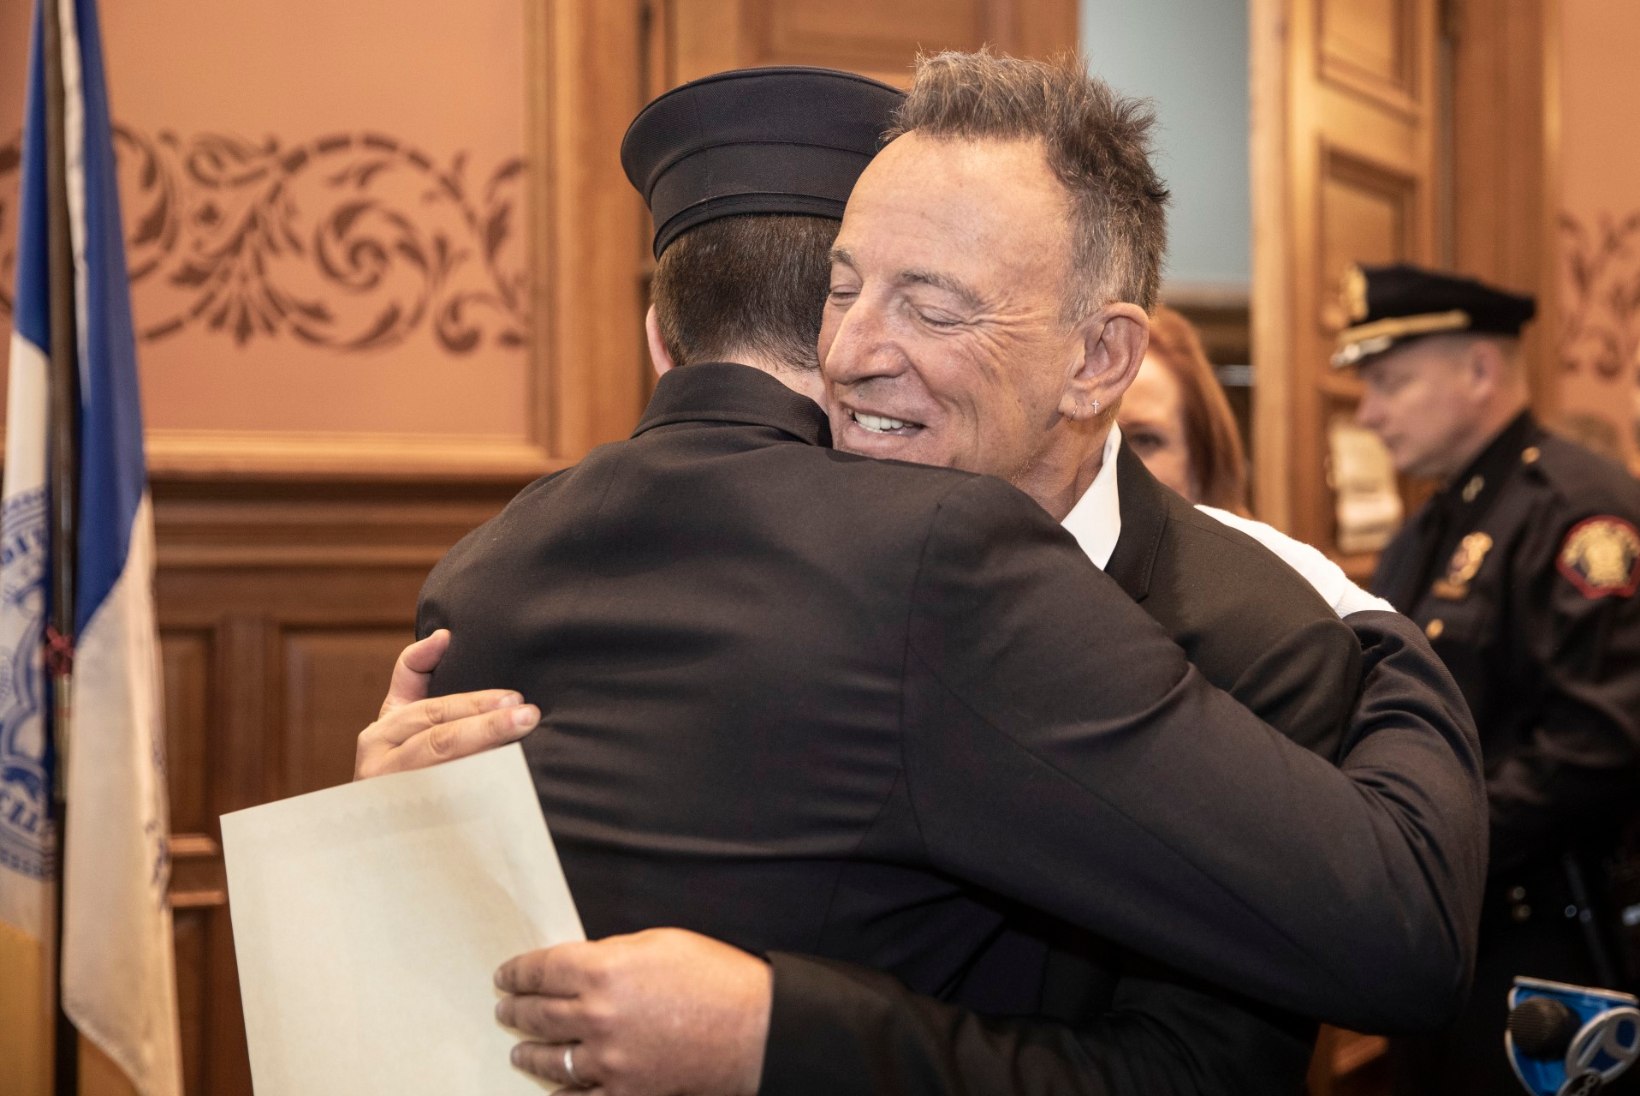 Bruce Springsteeni noorem poeg andis tuletõrjuja ametivande